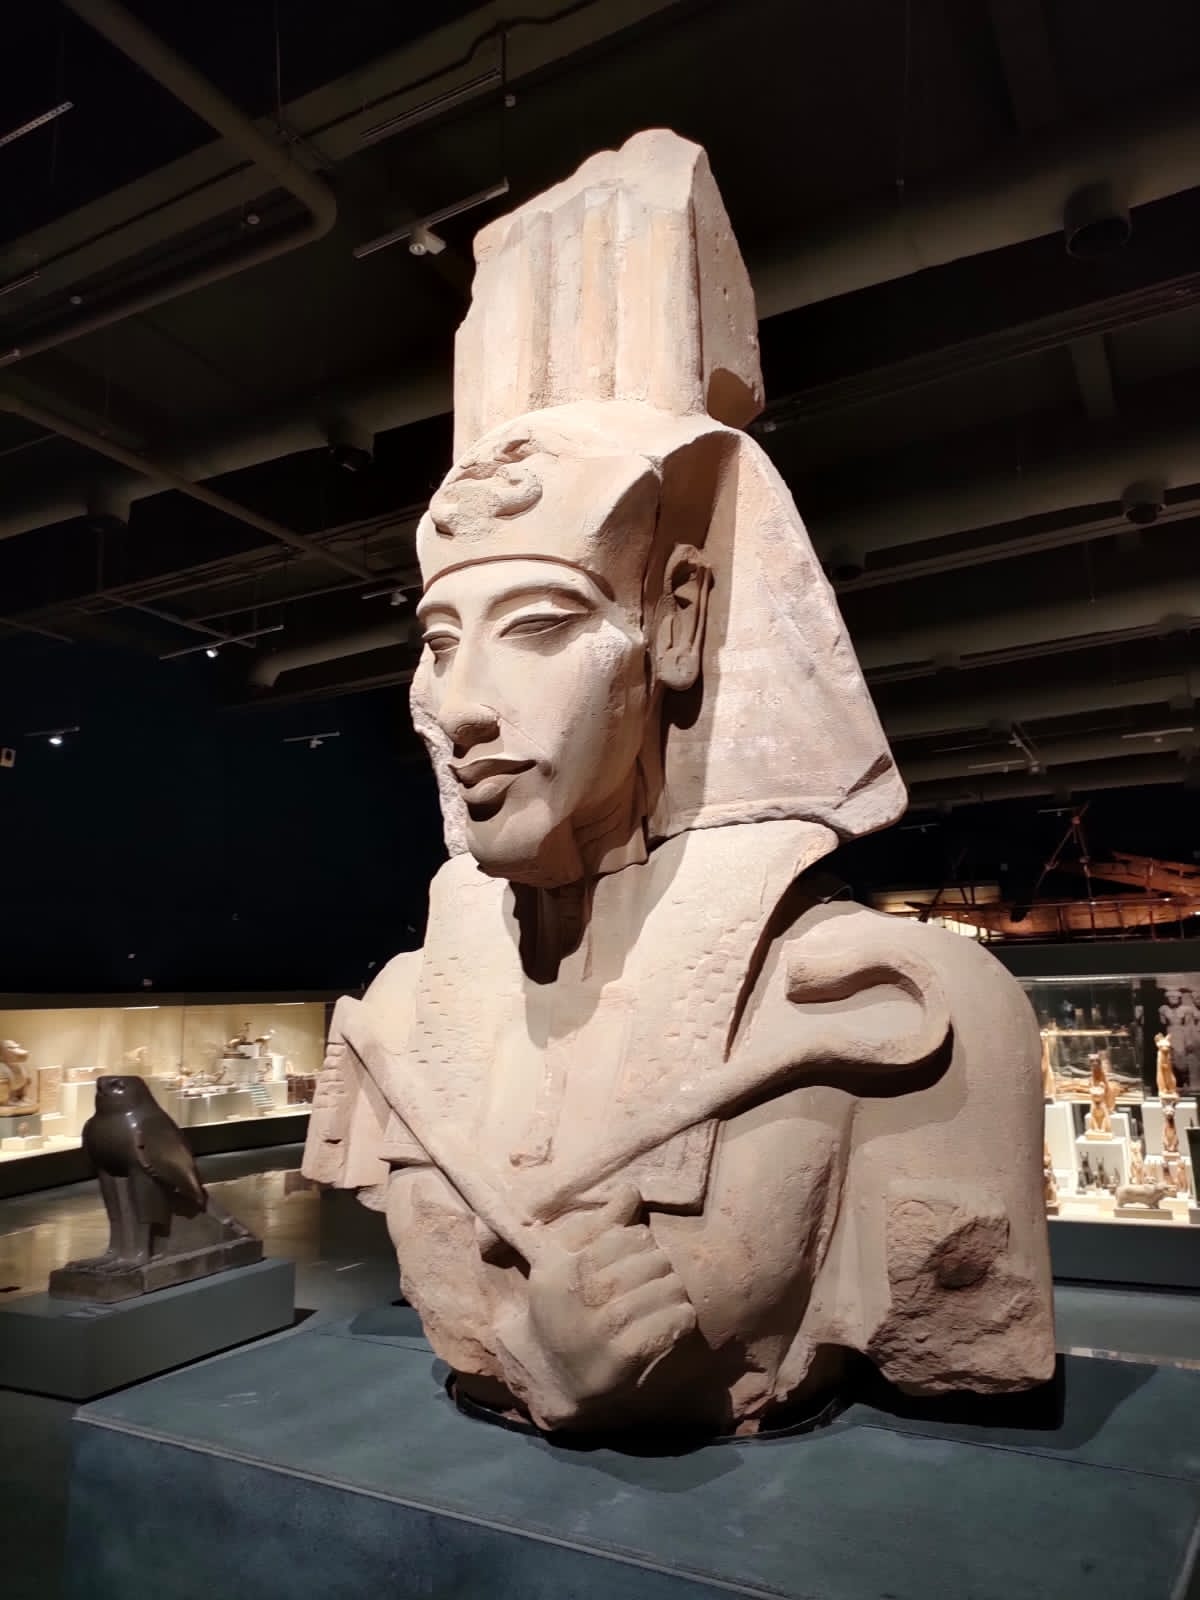  ”مصر وإرثها البيئي“ في معرض مؤقت بمتحف شرم الشيخ بمناسبة استضافة "COP27"